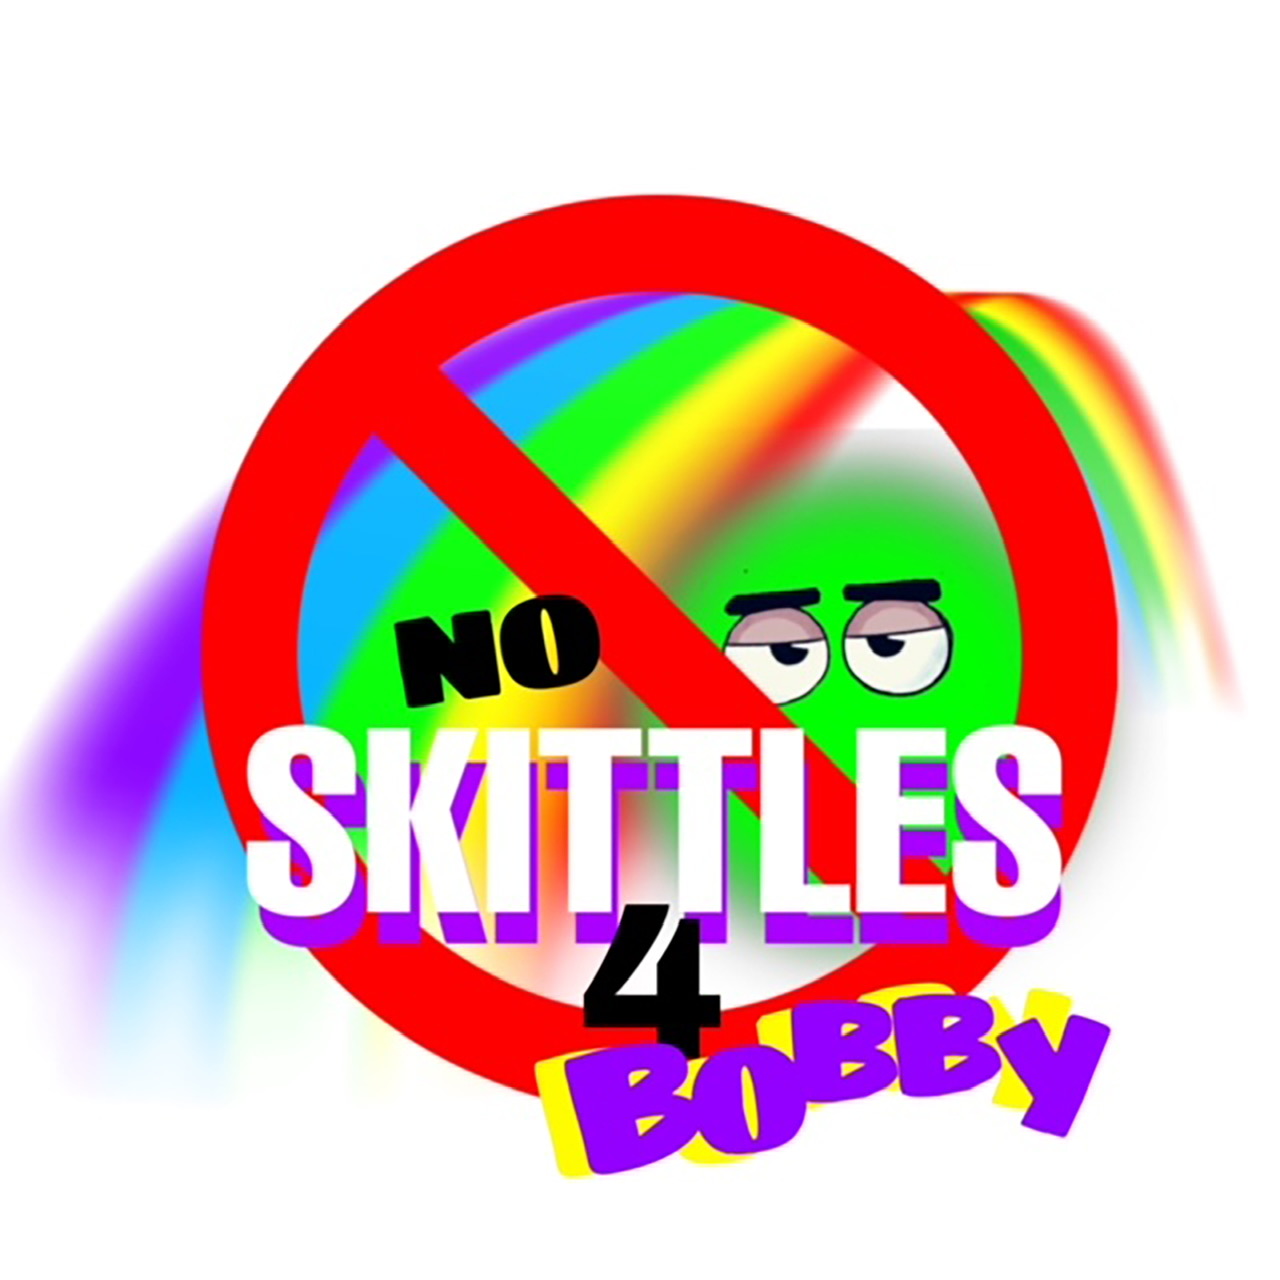 Skittles Wars